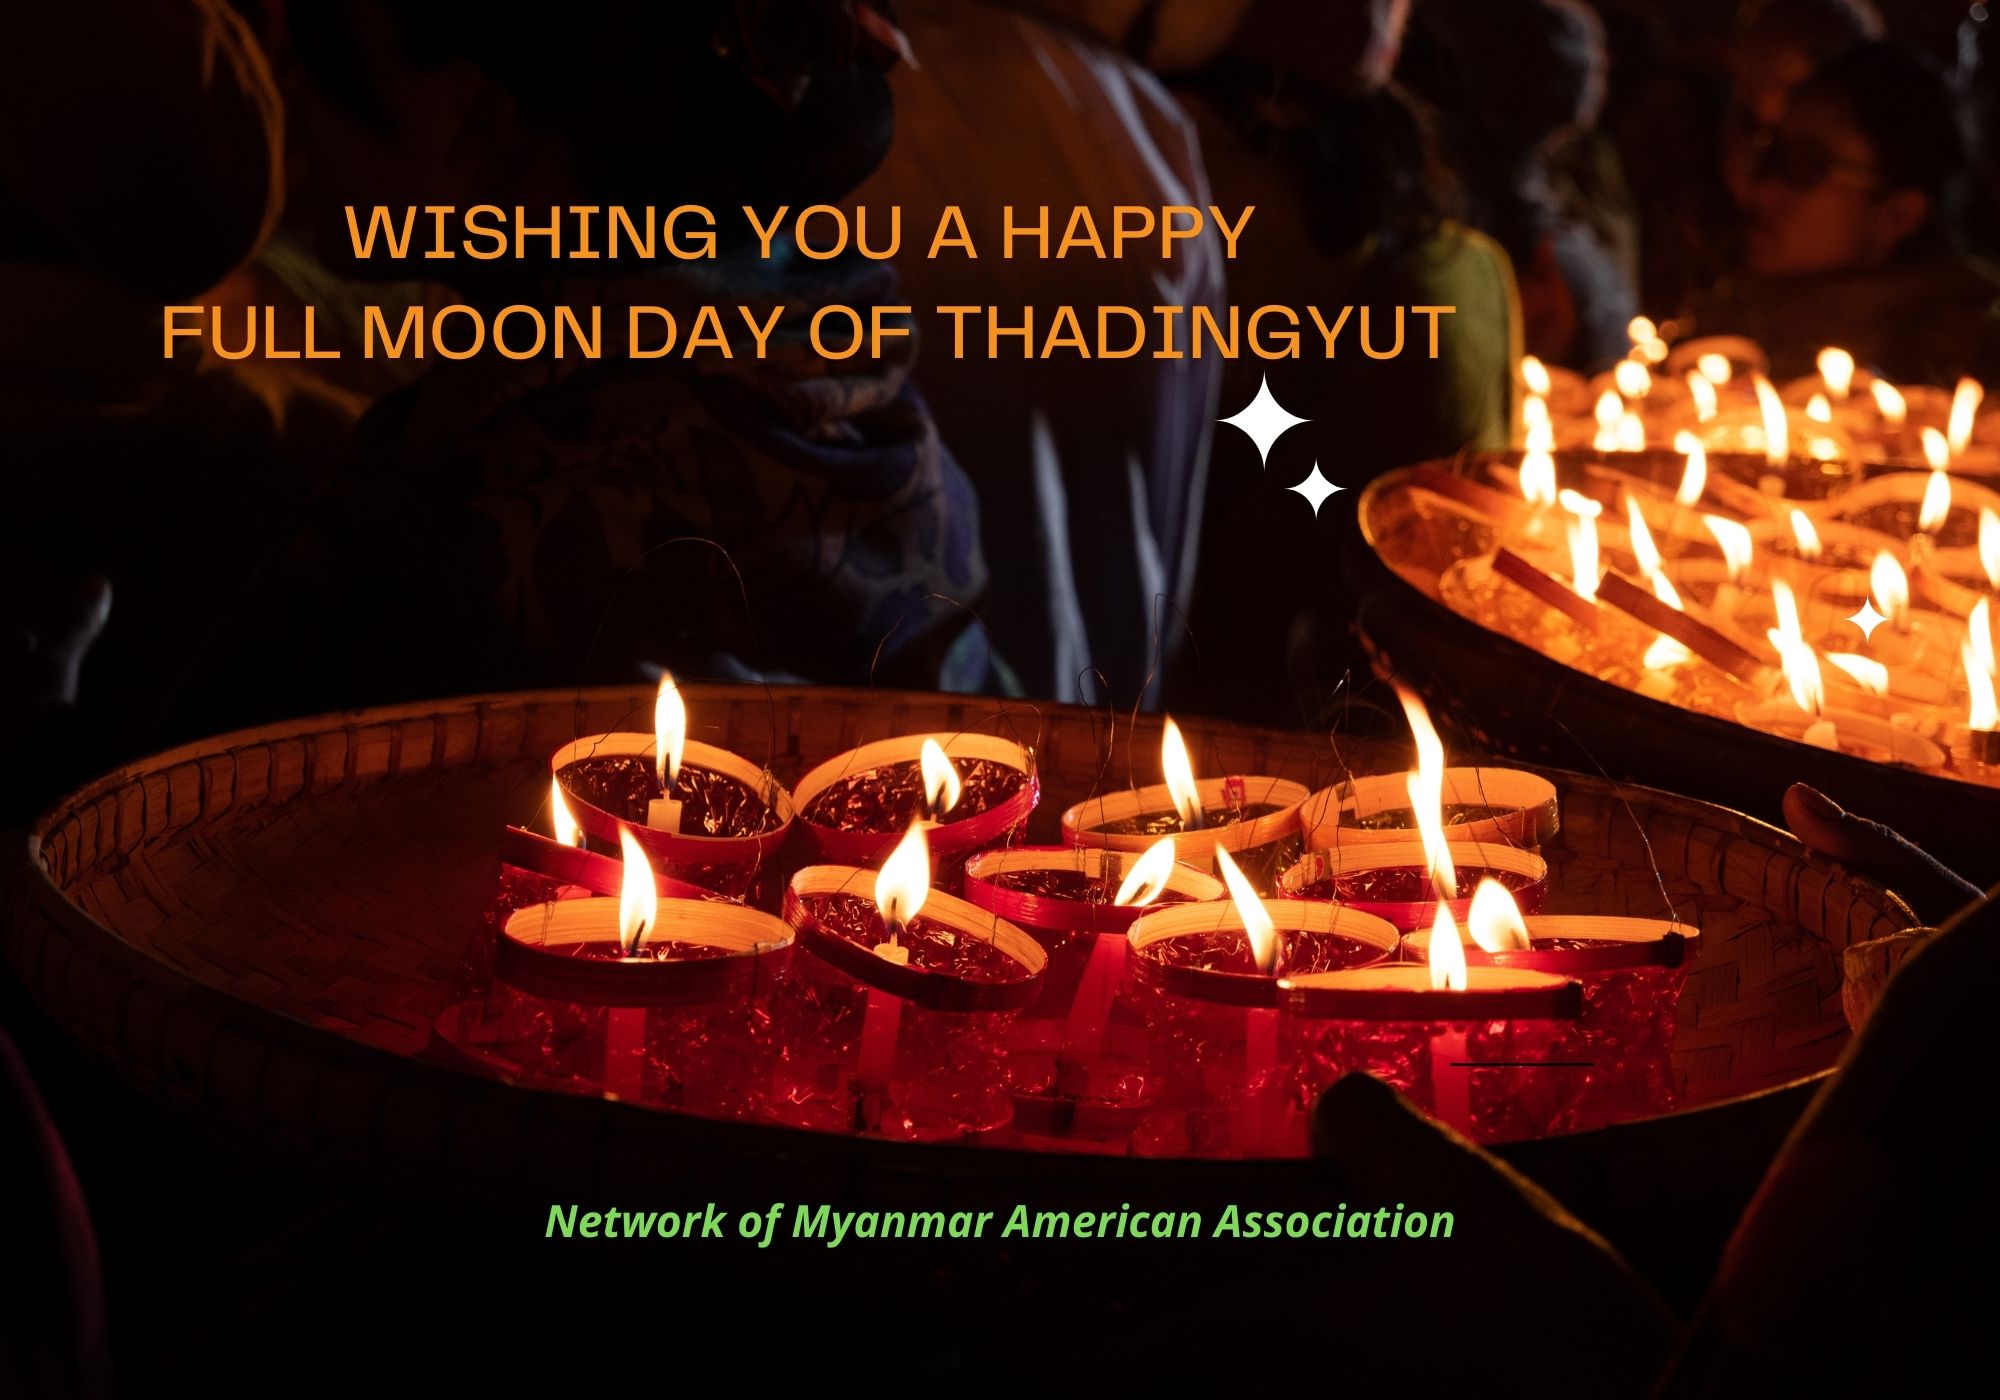 Full Moon Day of Thadingyut – Festival of Lights